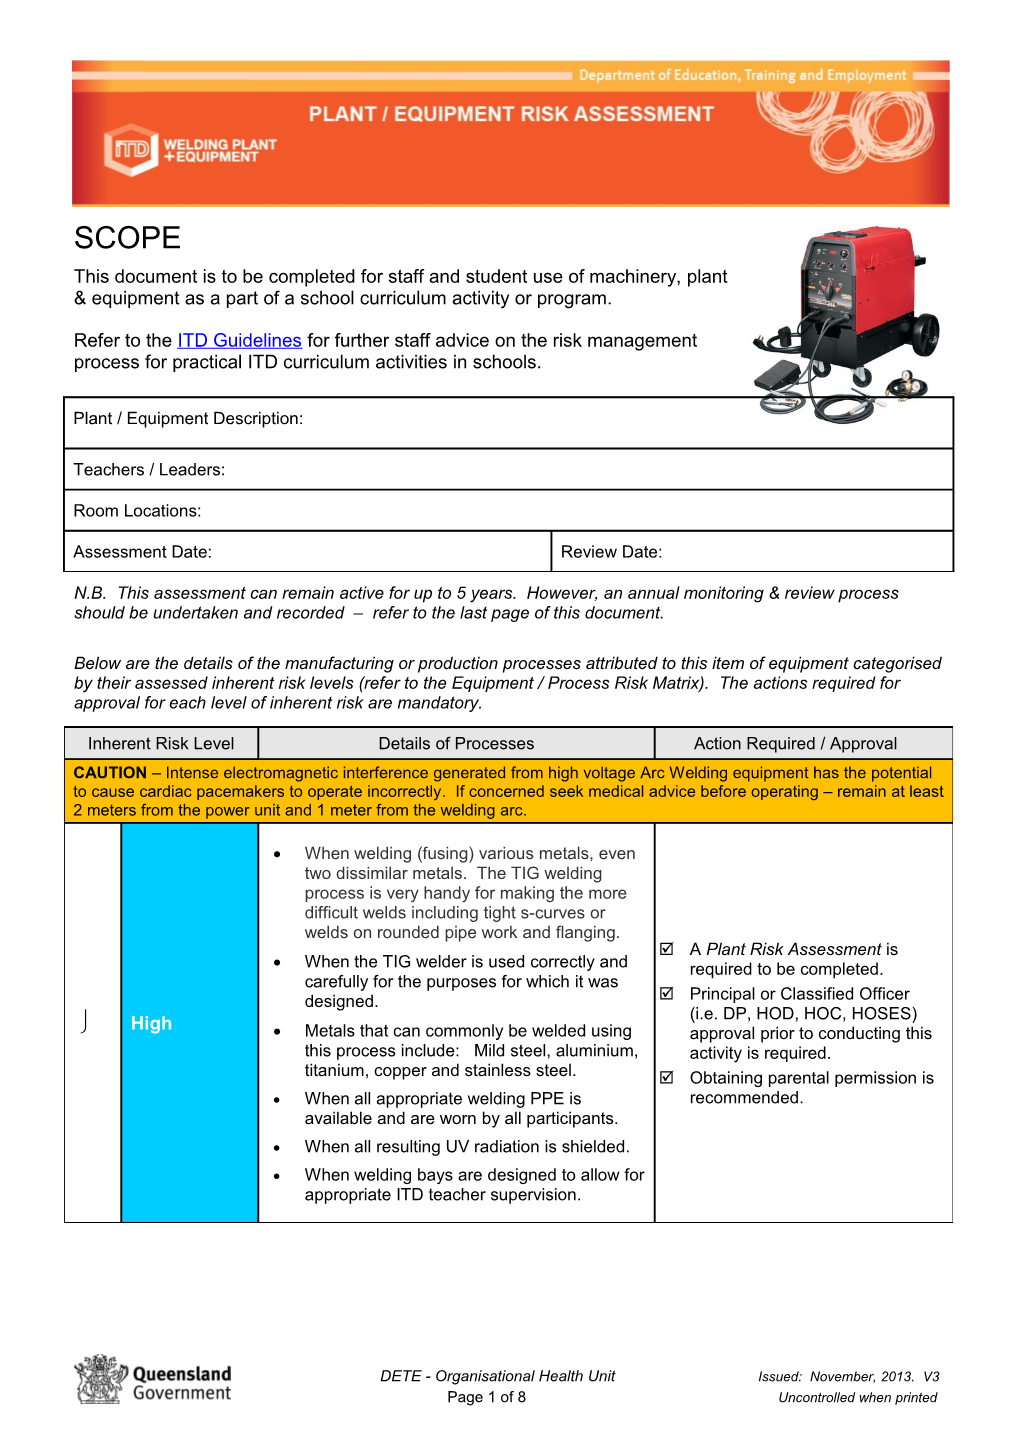 DETE - Plant & Equipment & Risk Assessment s1